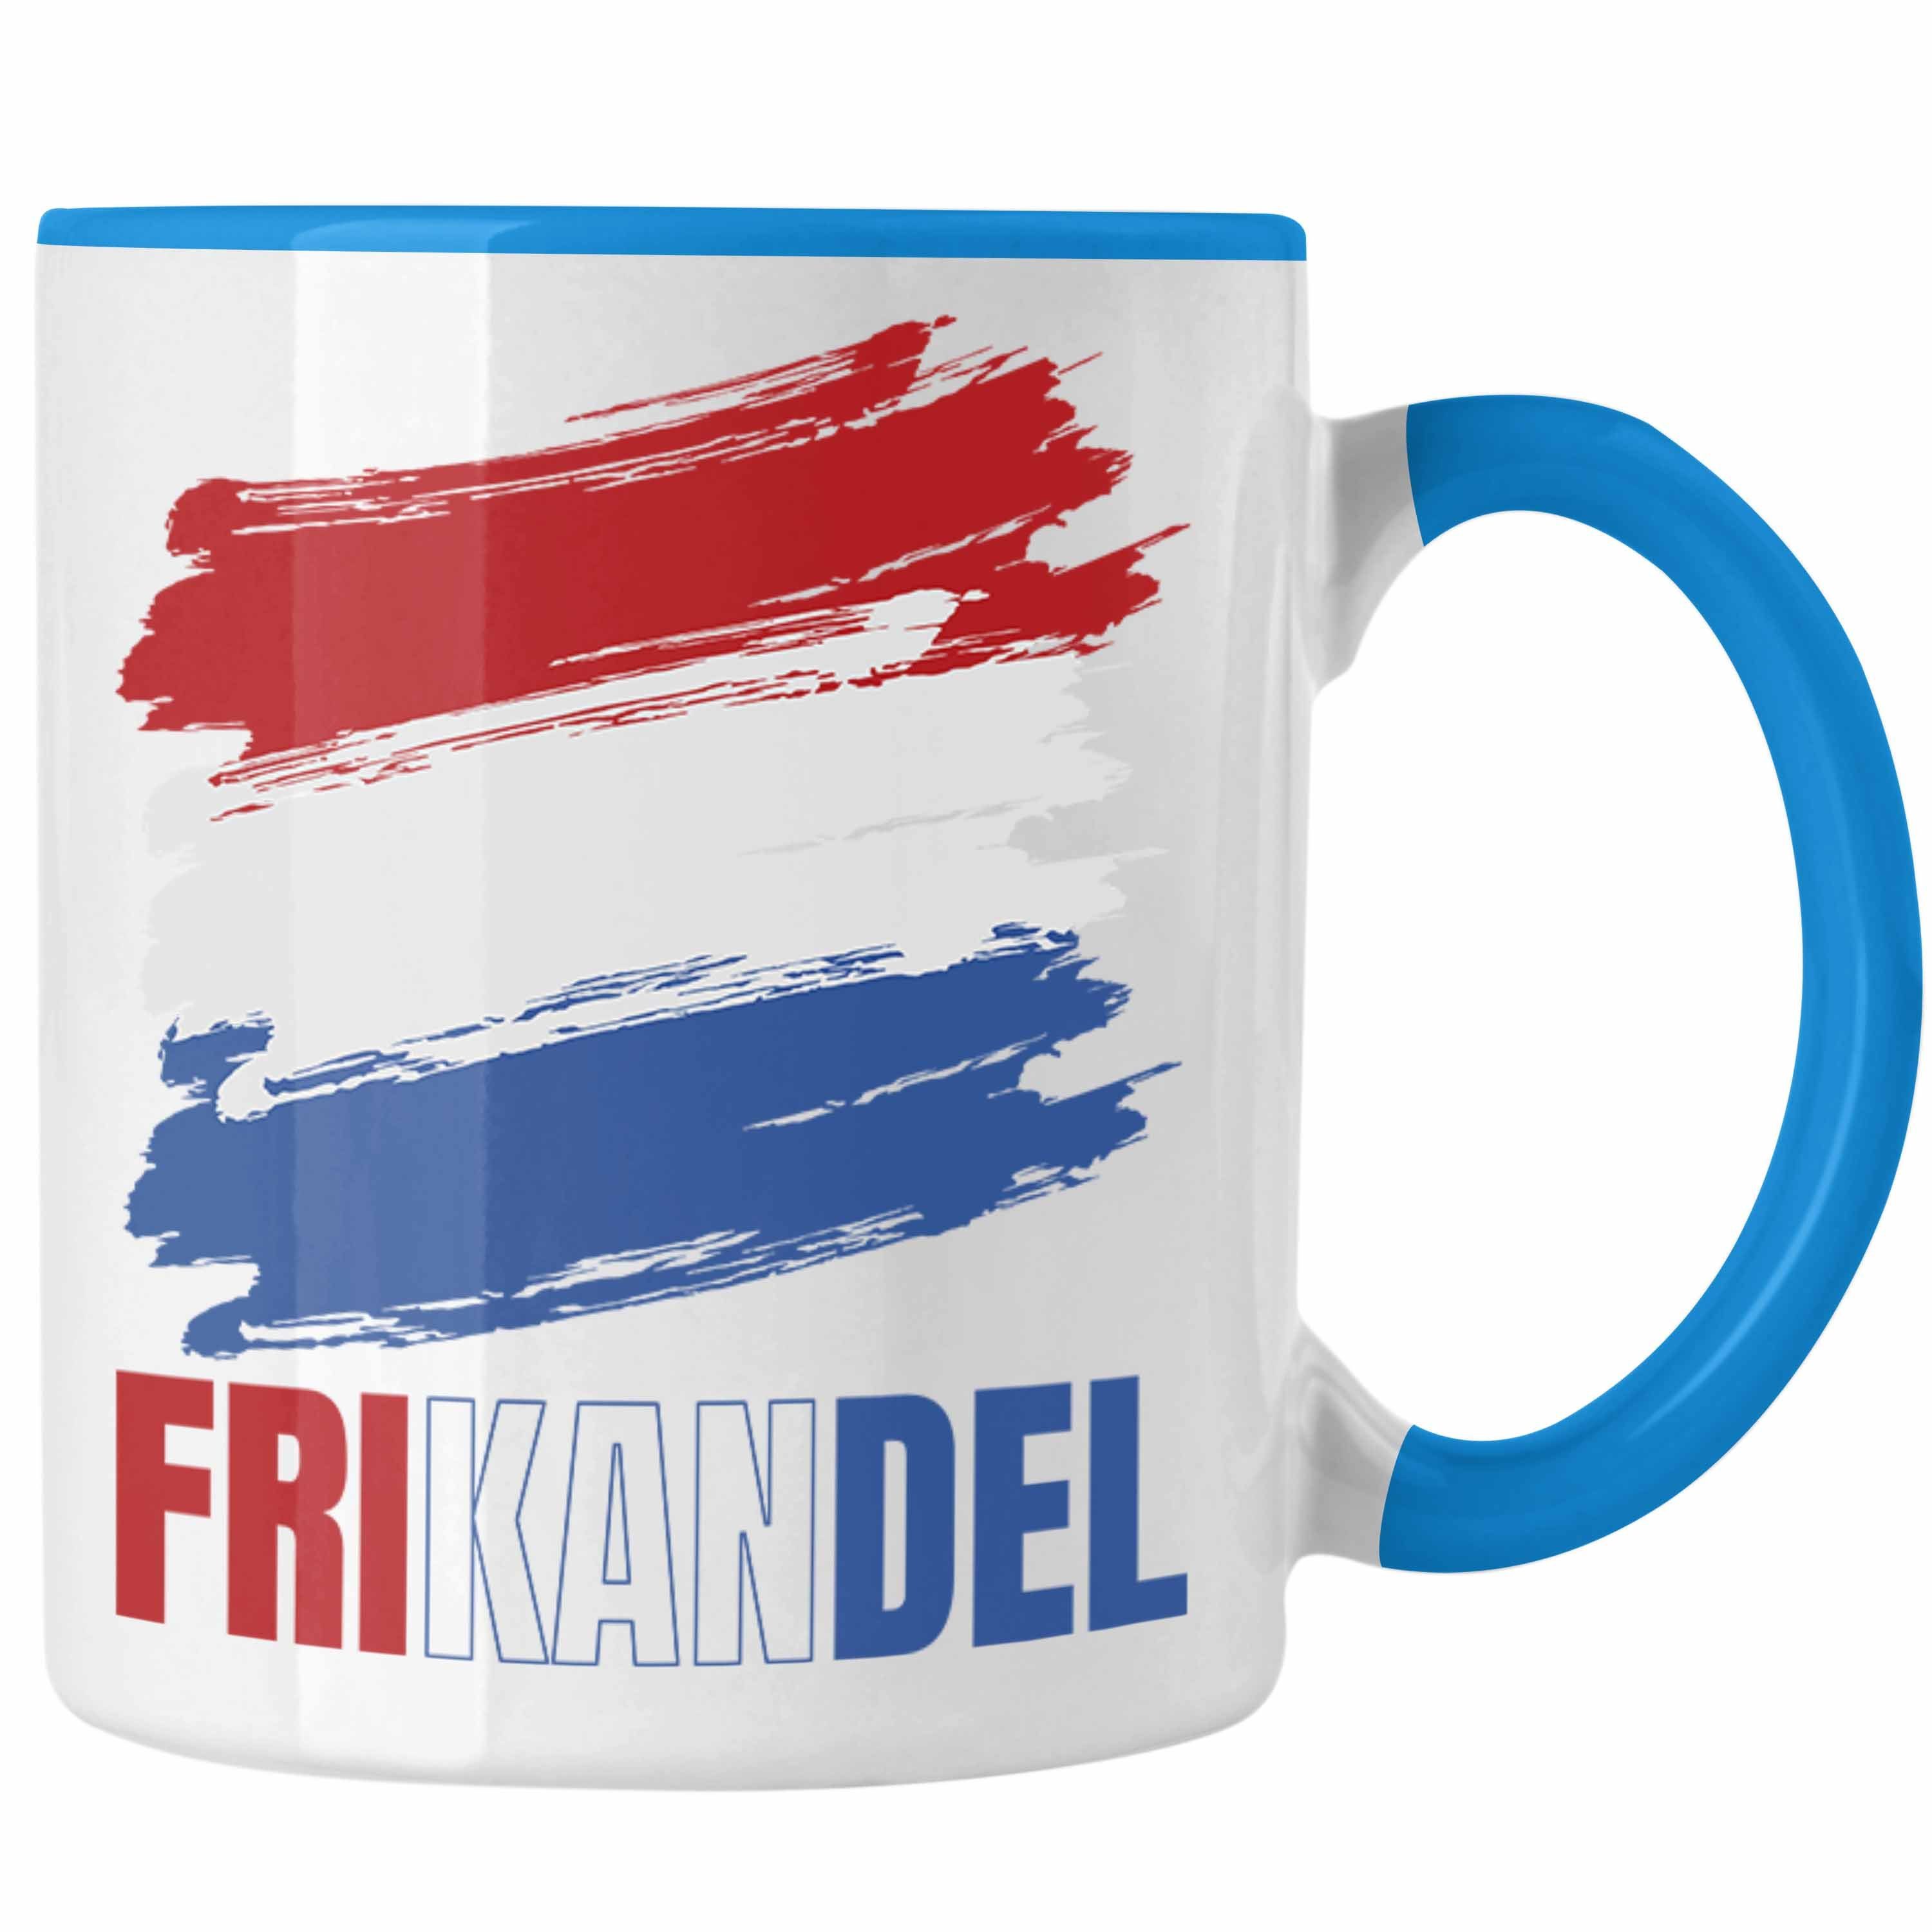 Trendation Tasse Holland Fan Kaffee-Becher Frikande Tasse Holländer Geschenk Blau